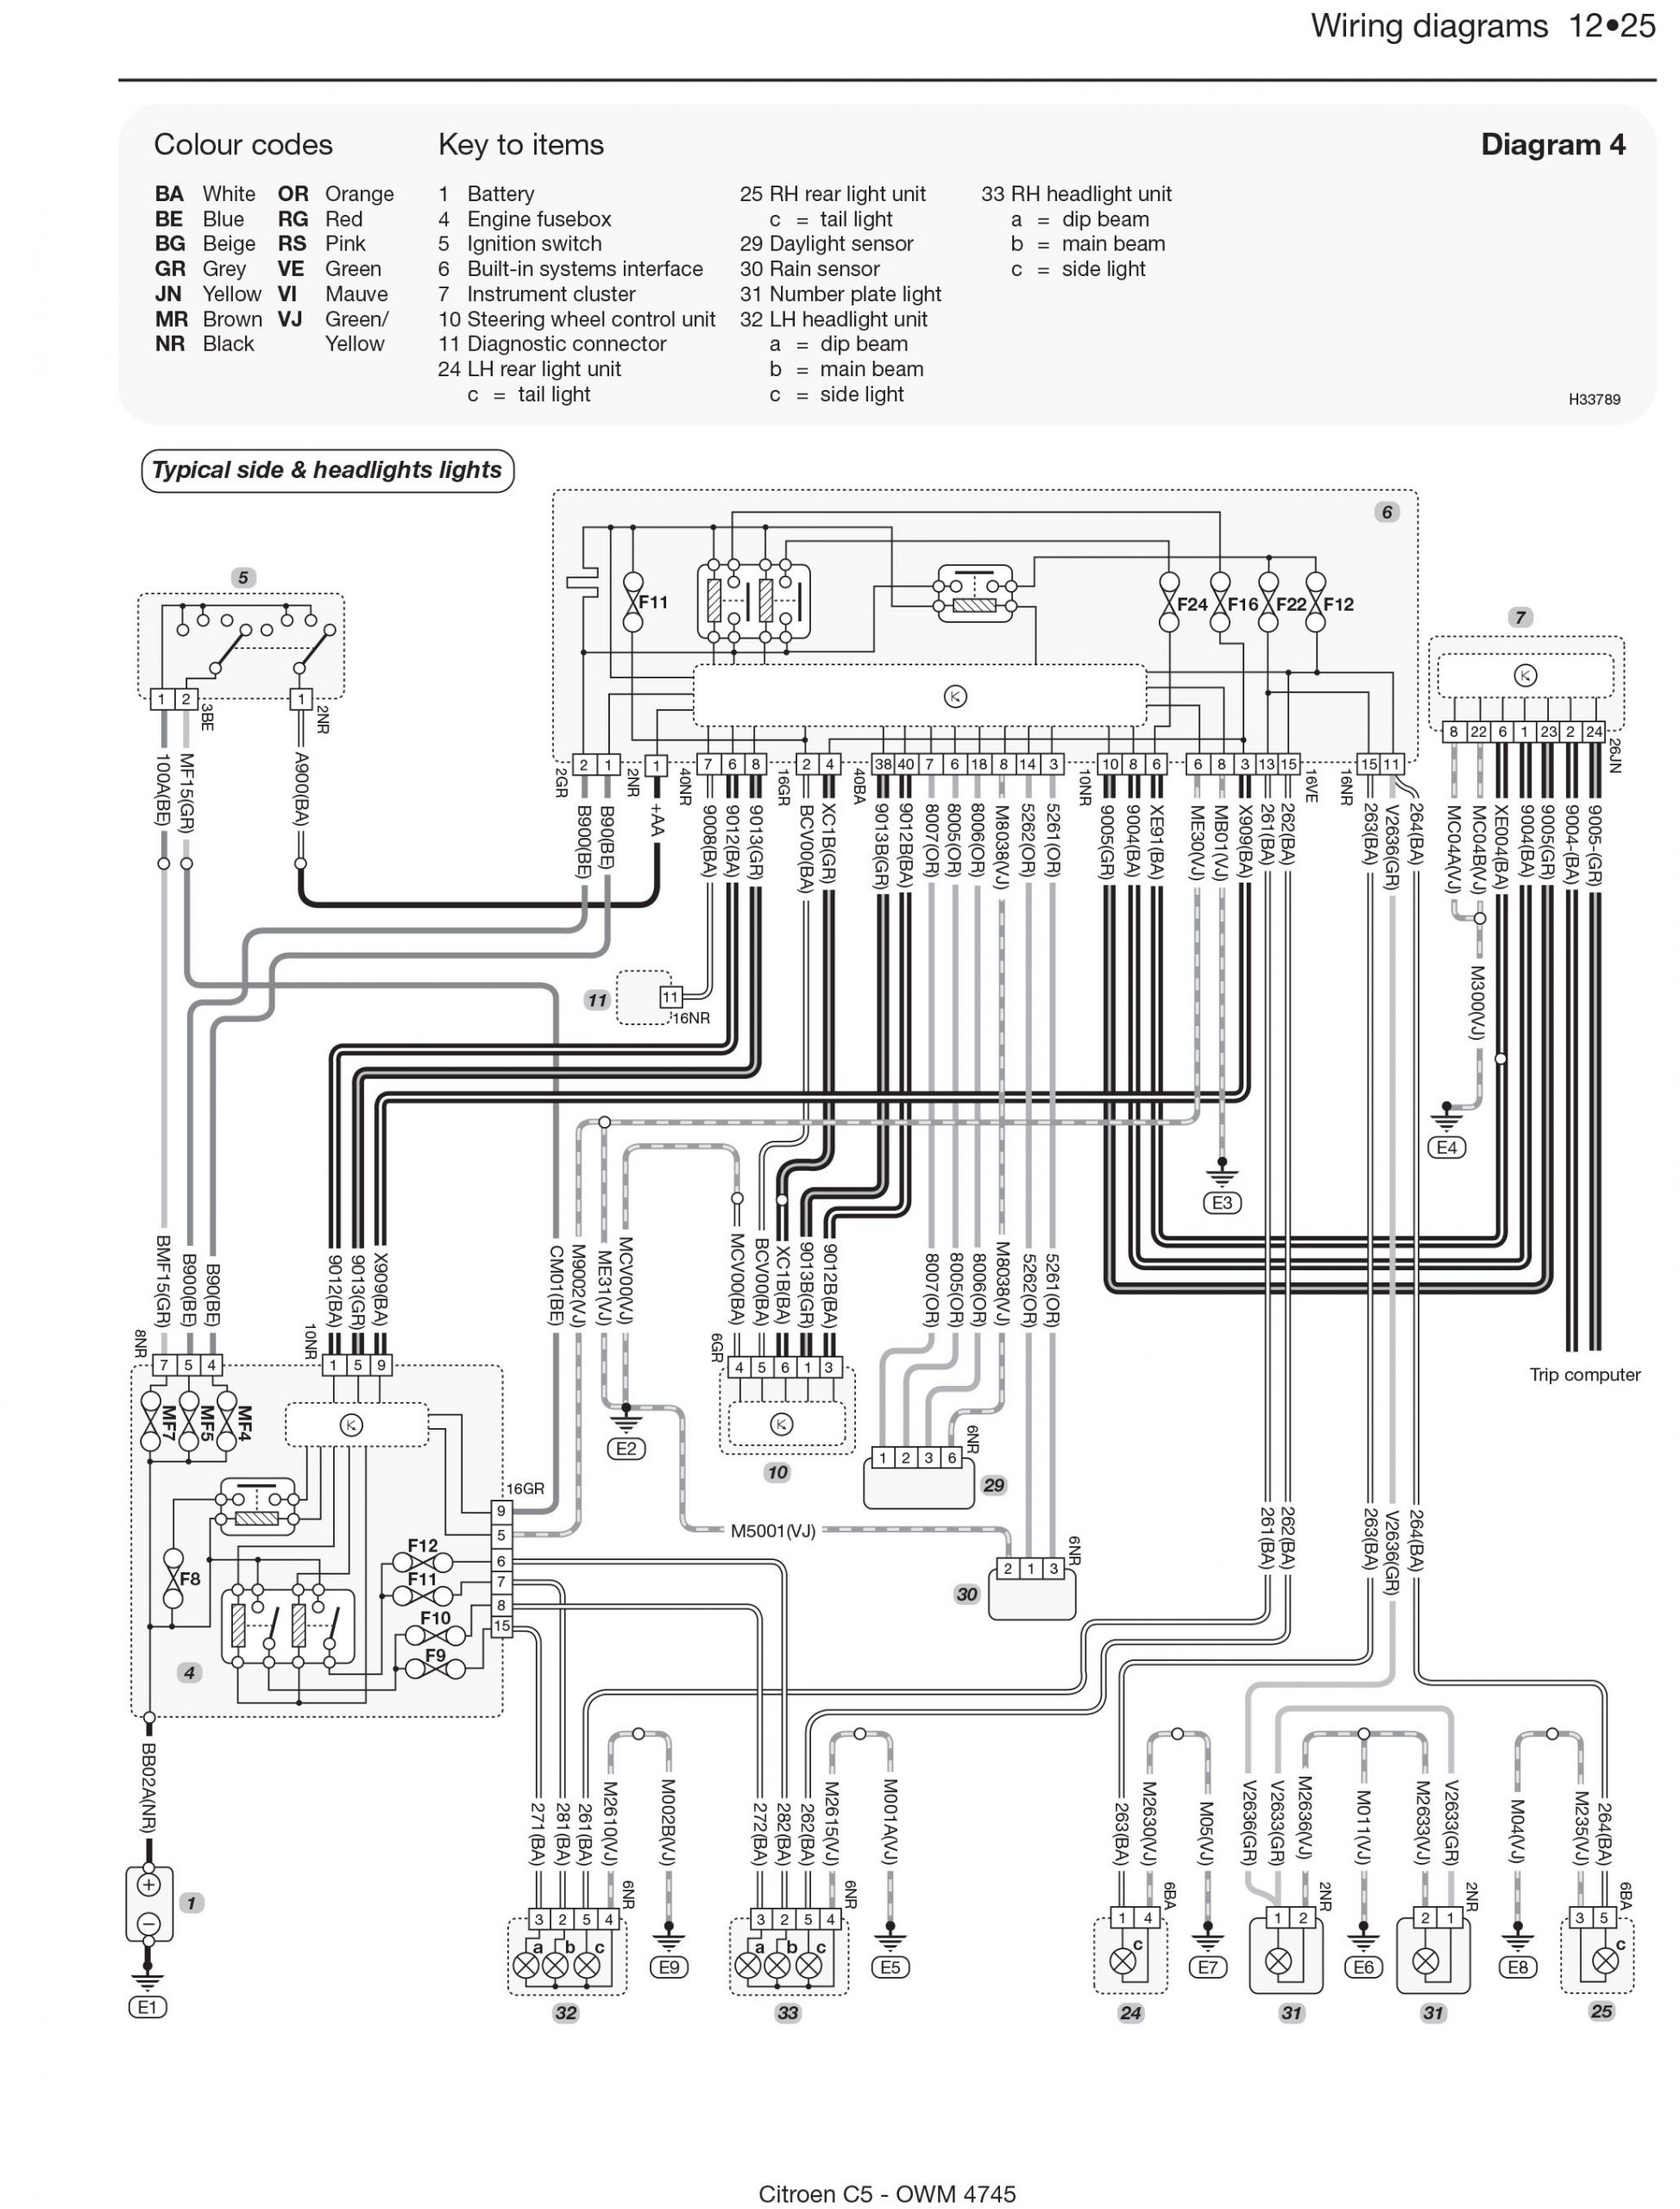 Circuit Diagram Lights In Citroen C3 Schema Electrique Autoradio Citroen C3 Of Circuit Diagram Lights In Citroen C3